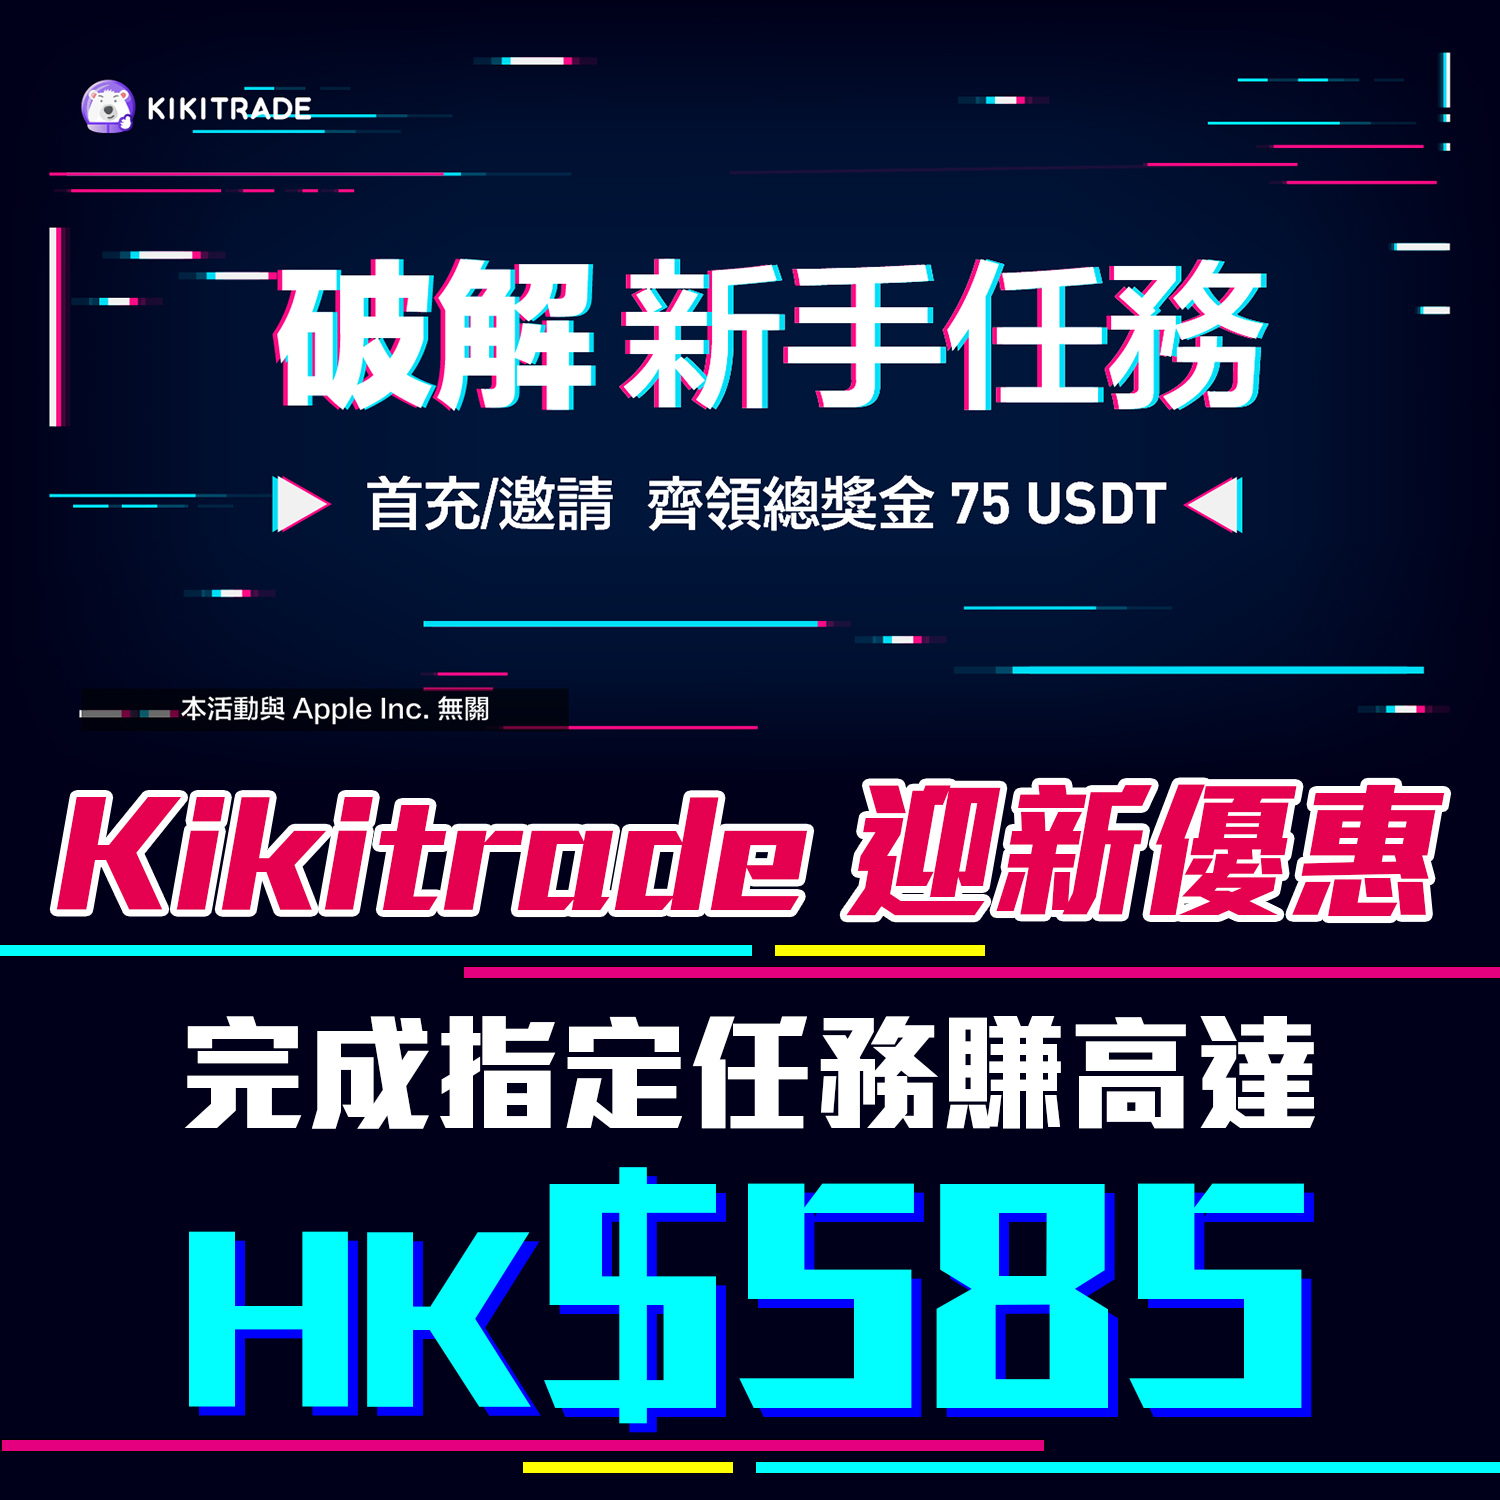 【Kikitrade開戶賞】開戶賺高達75 USDT！